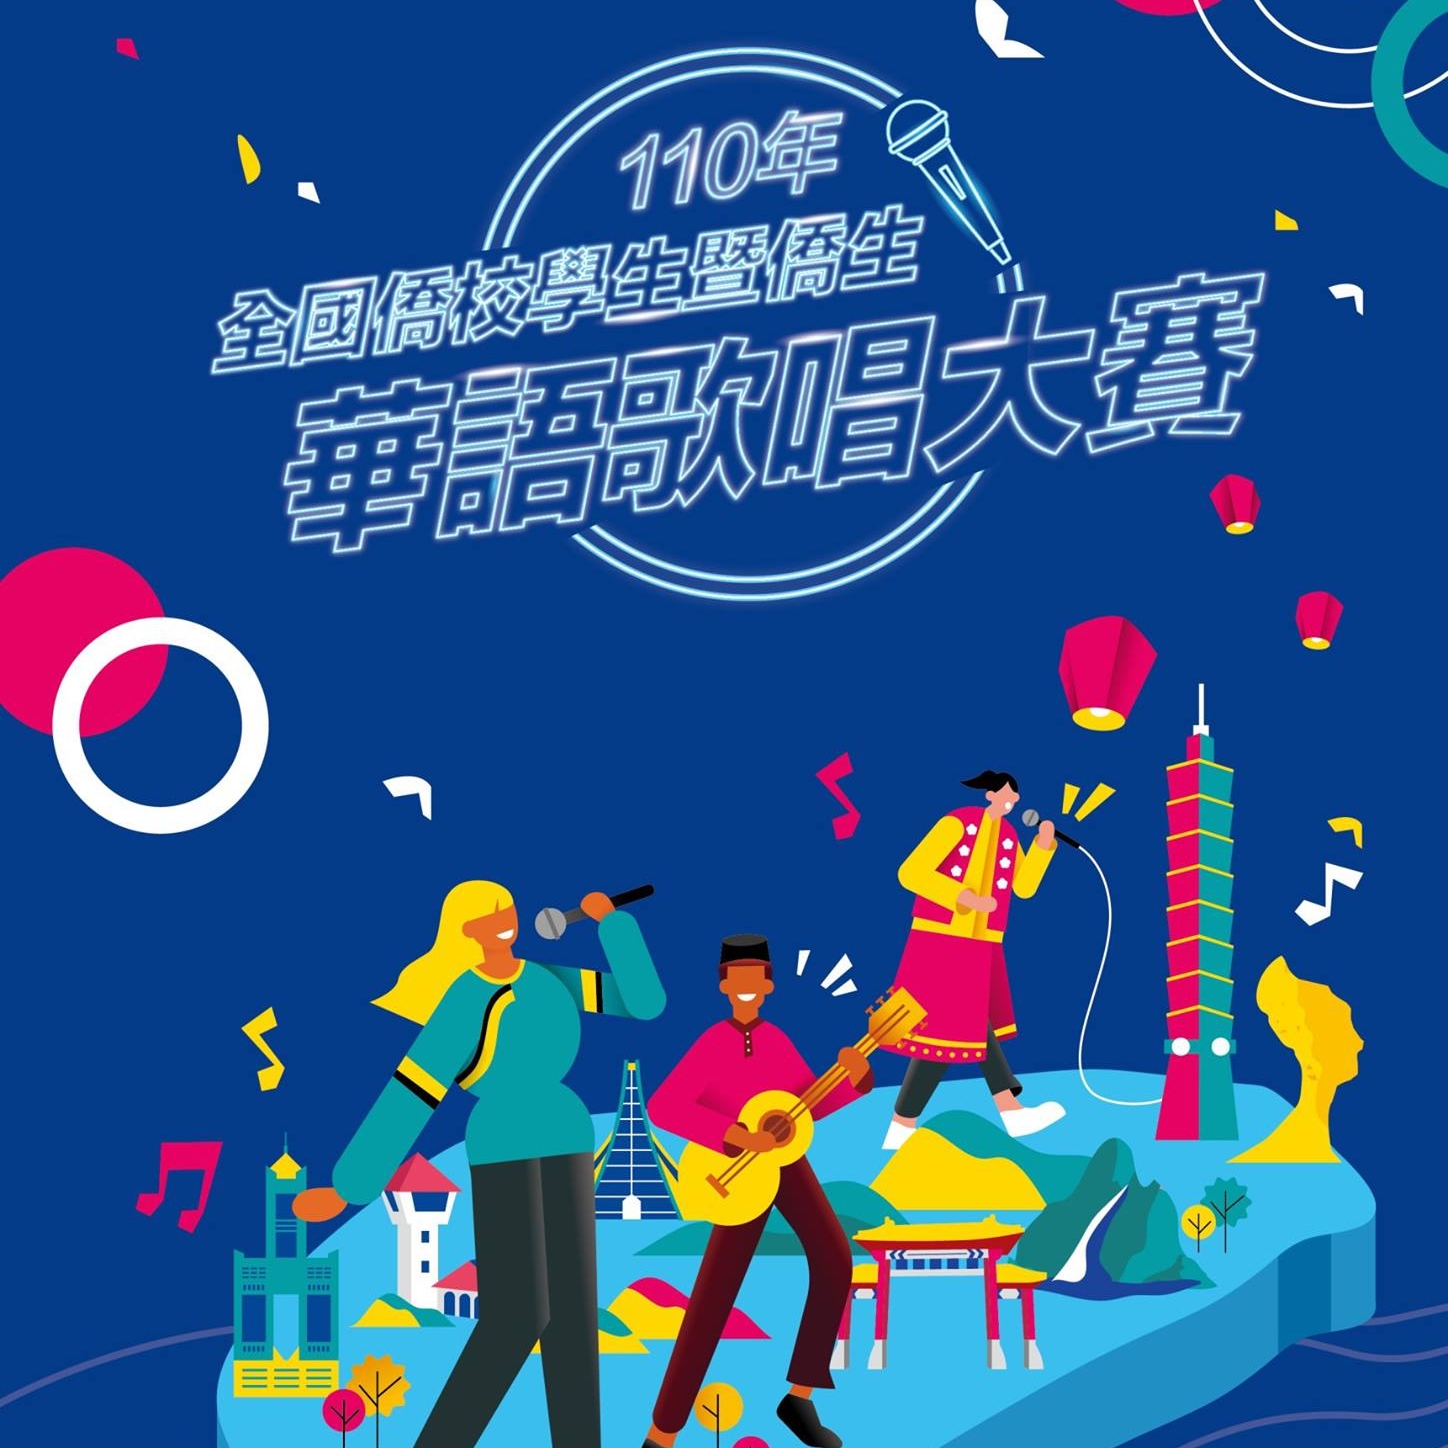 "การประกวดร้องเพลงจีน" ซึ่งจัดโดยคณะกรรมการกิจการจีนโพ้นทะเล กระทรวงวัฒนธรรม และคณะกรรมการฮากกาเริ่มต้นขึ้นแล้ว! (รูปภาพ/นำมาจาก Facebook110年全球僑校學生暨僑生華語歌唱大賽)